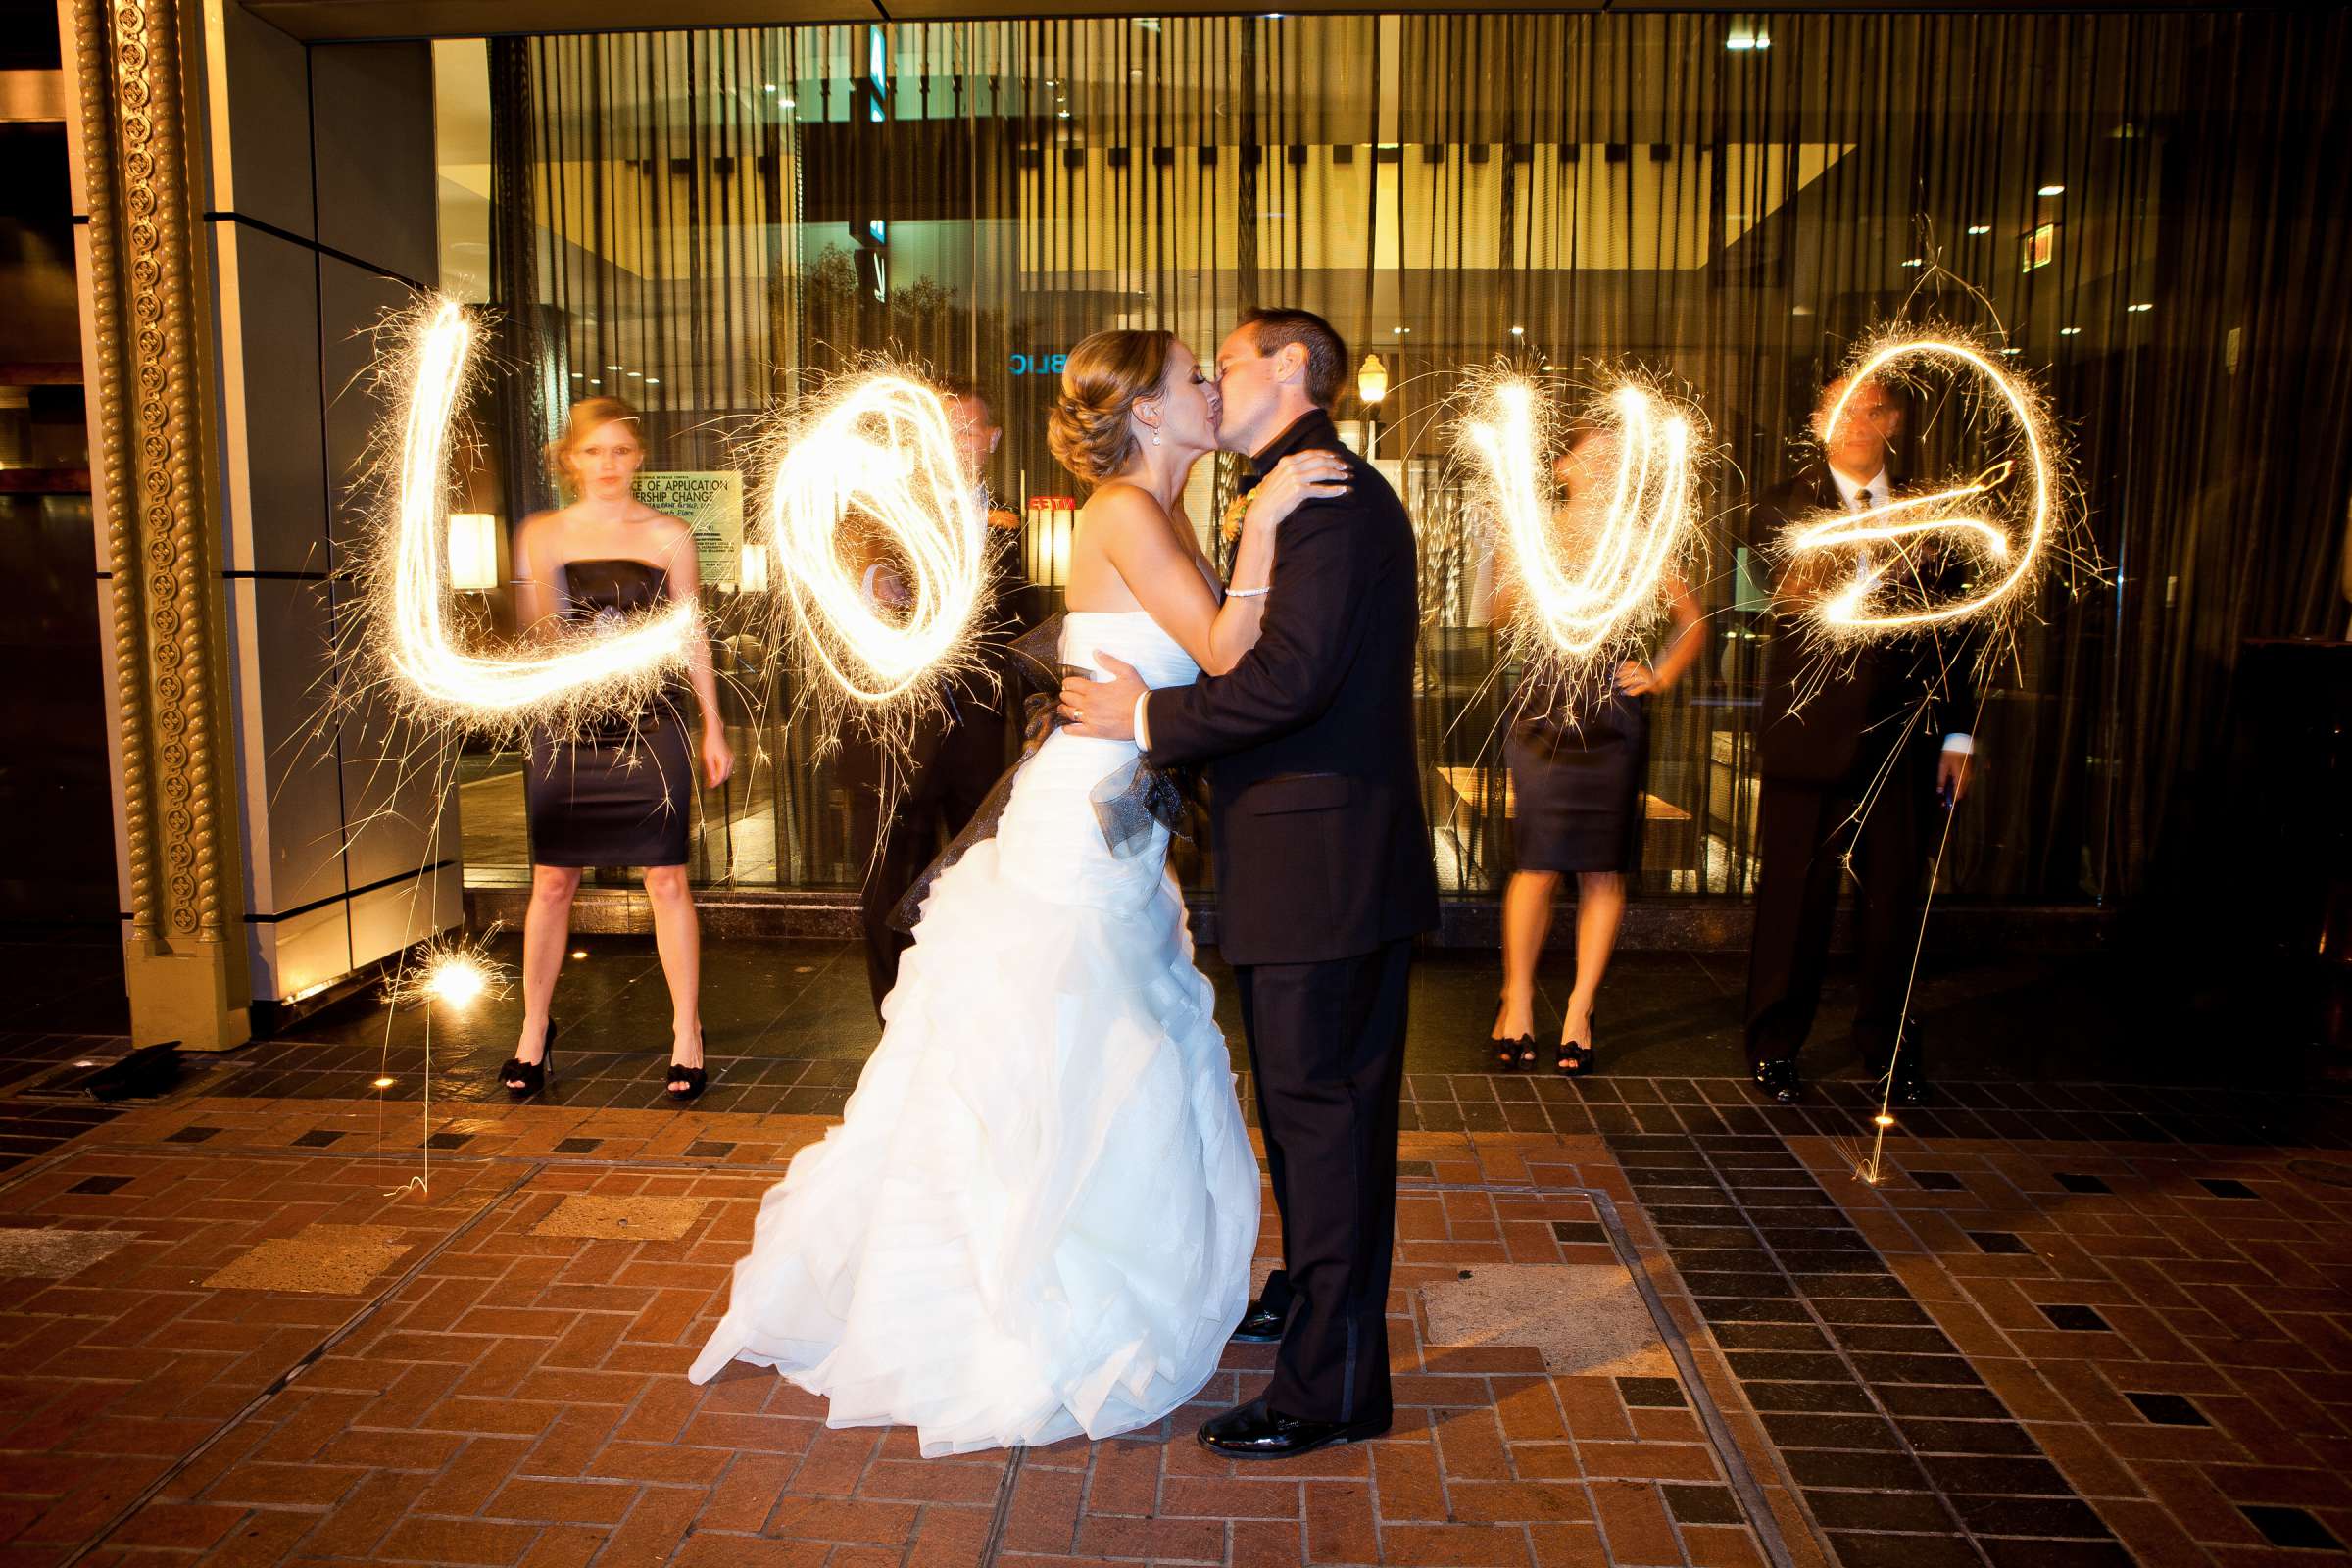 Hotel Palomar San Diego Wedding, Liz and Jeff Wedding Photo #205364 by True Photography